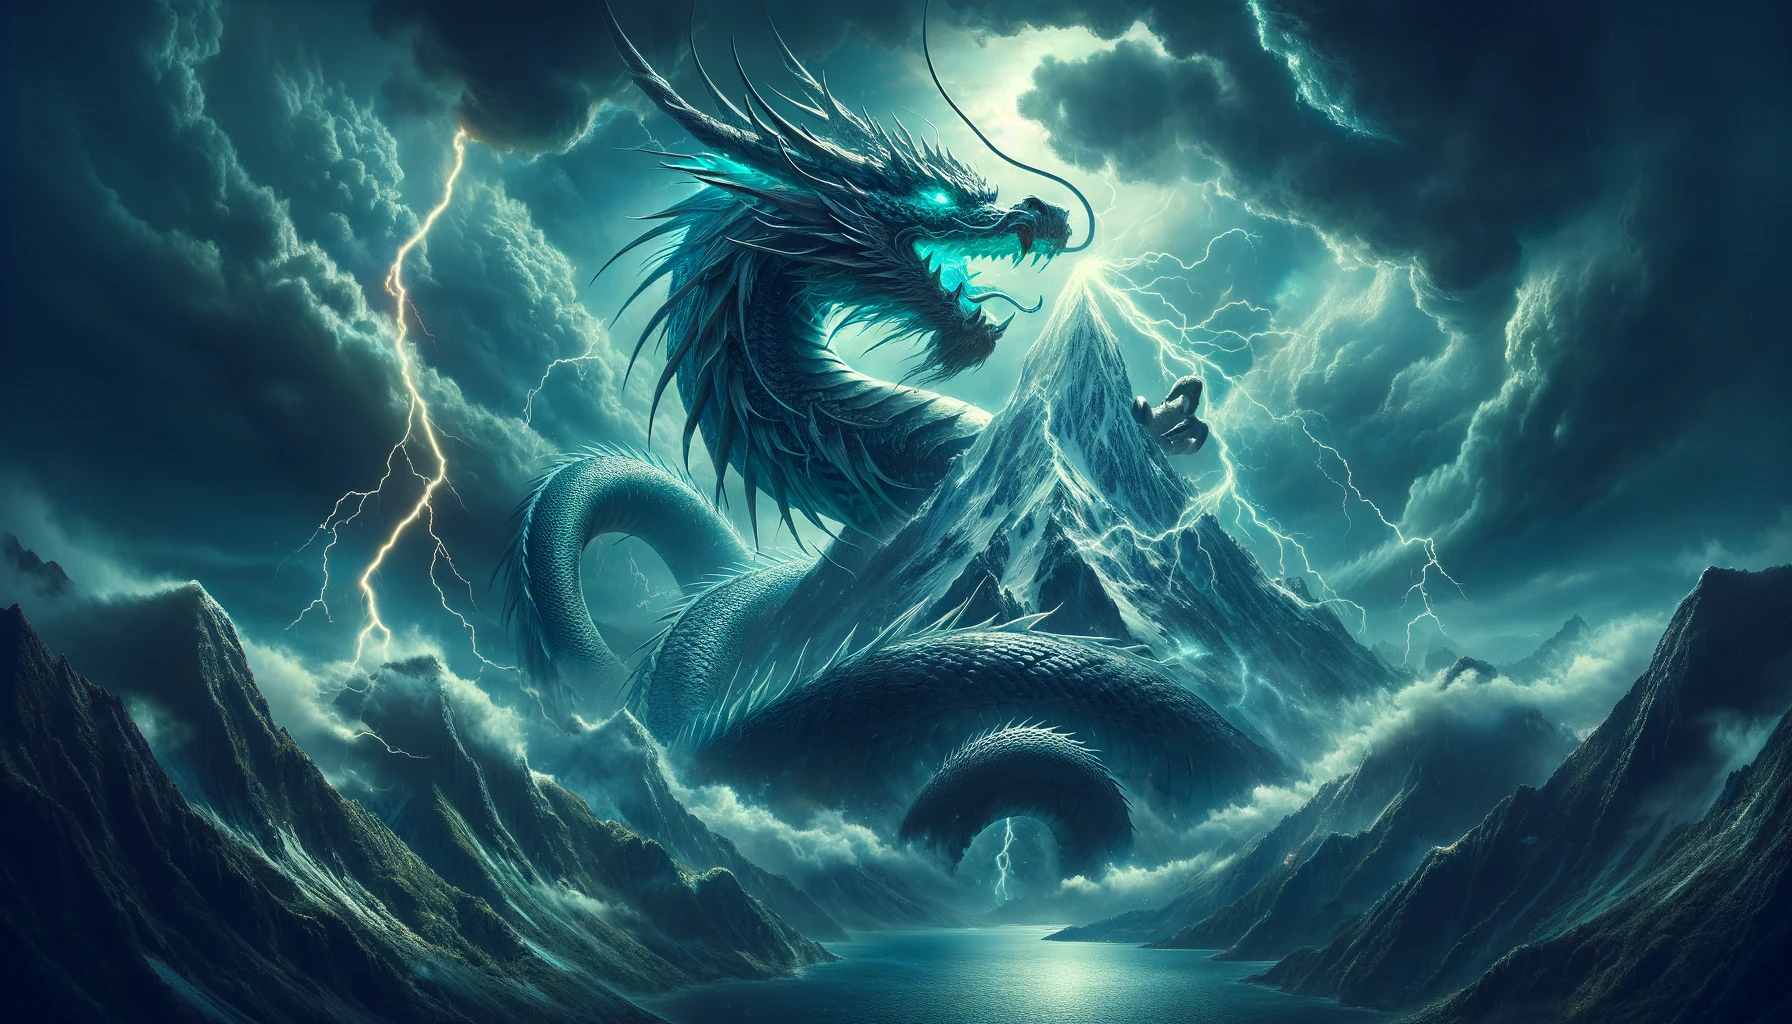 "開聞岳を背景に嵐の空の下で雷を纏いながら威厳を放つ神秘的な龍神。その体からは青と緑の光が反射し、山の頂を取り巻くように螺旋を描いている。"